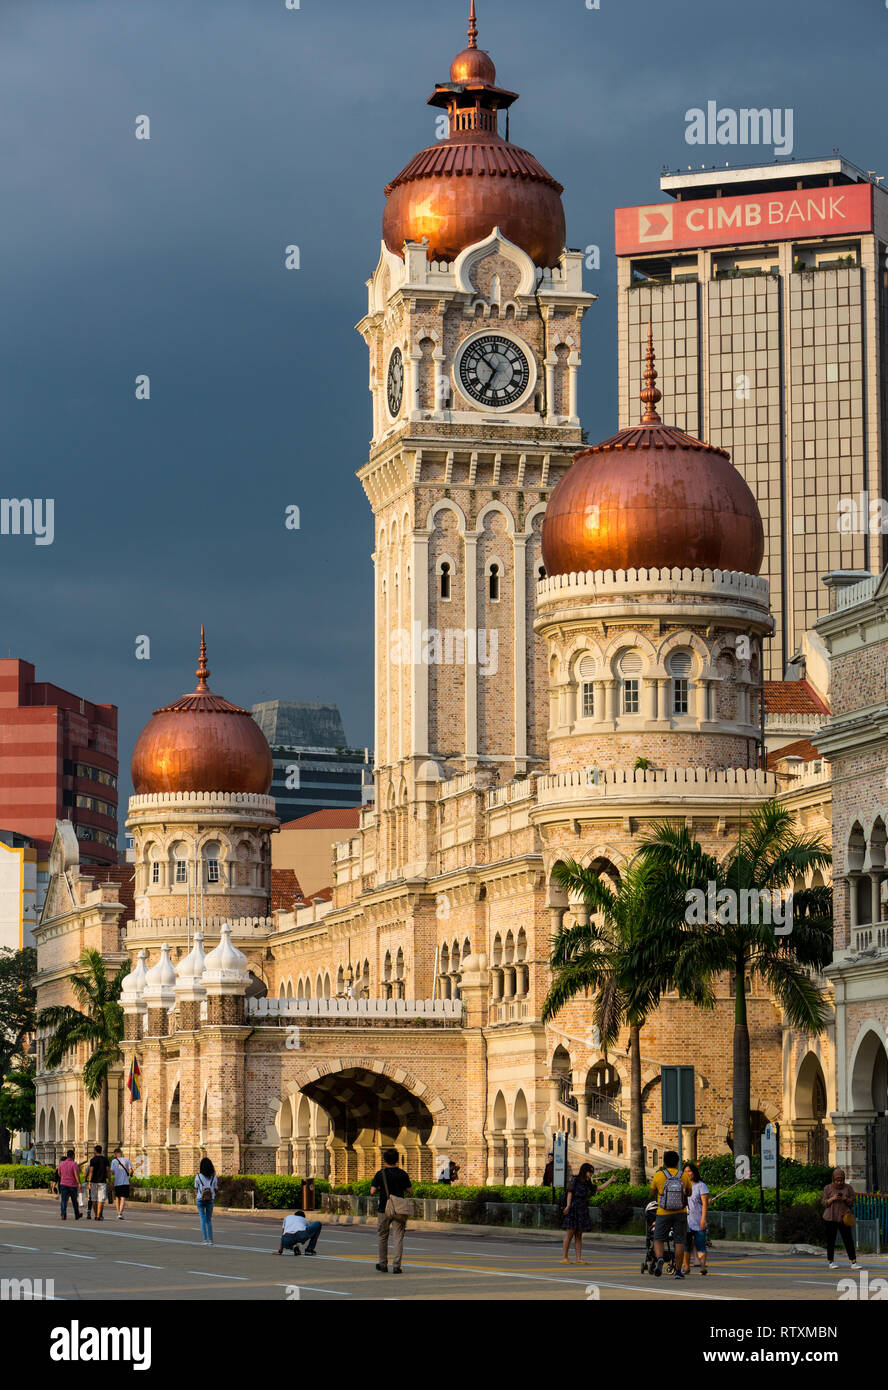 L'architecture mauresque. Sultan Abdul Samad Building, ancien siège de l'administration coloniale britannique. Kuala Lumpur, Malaisie. Banque D'Images